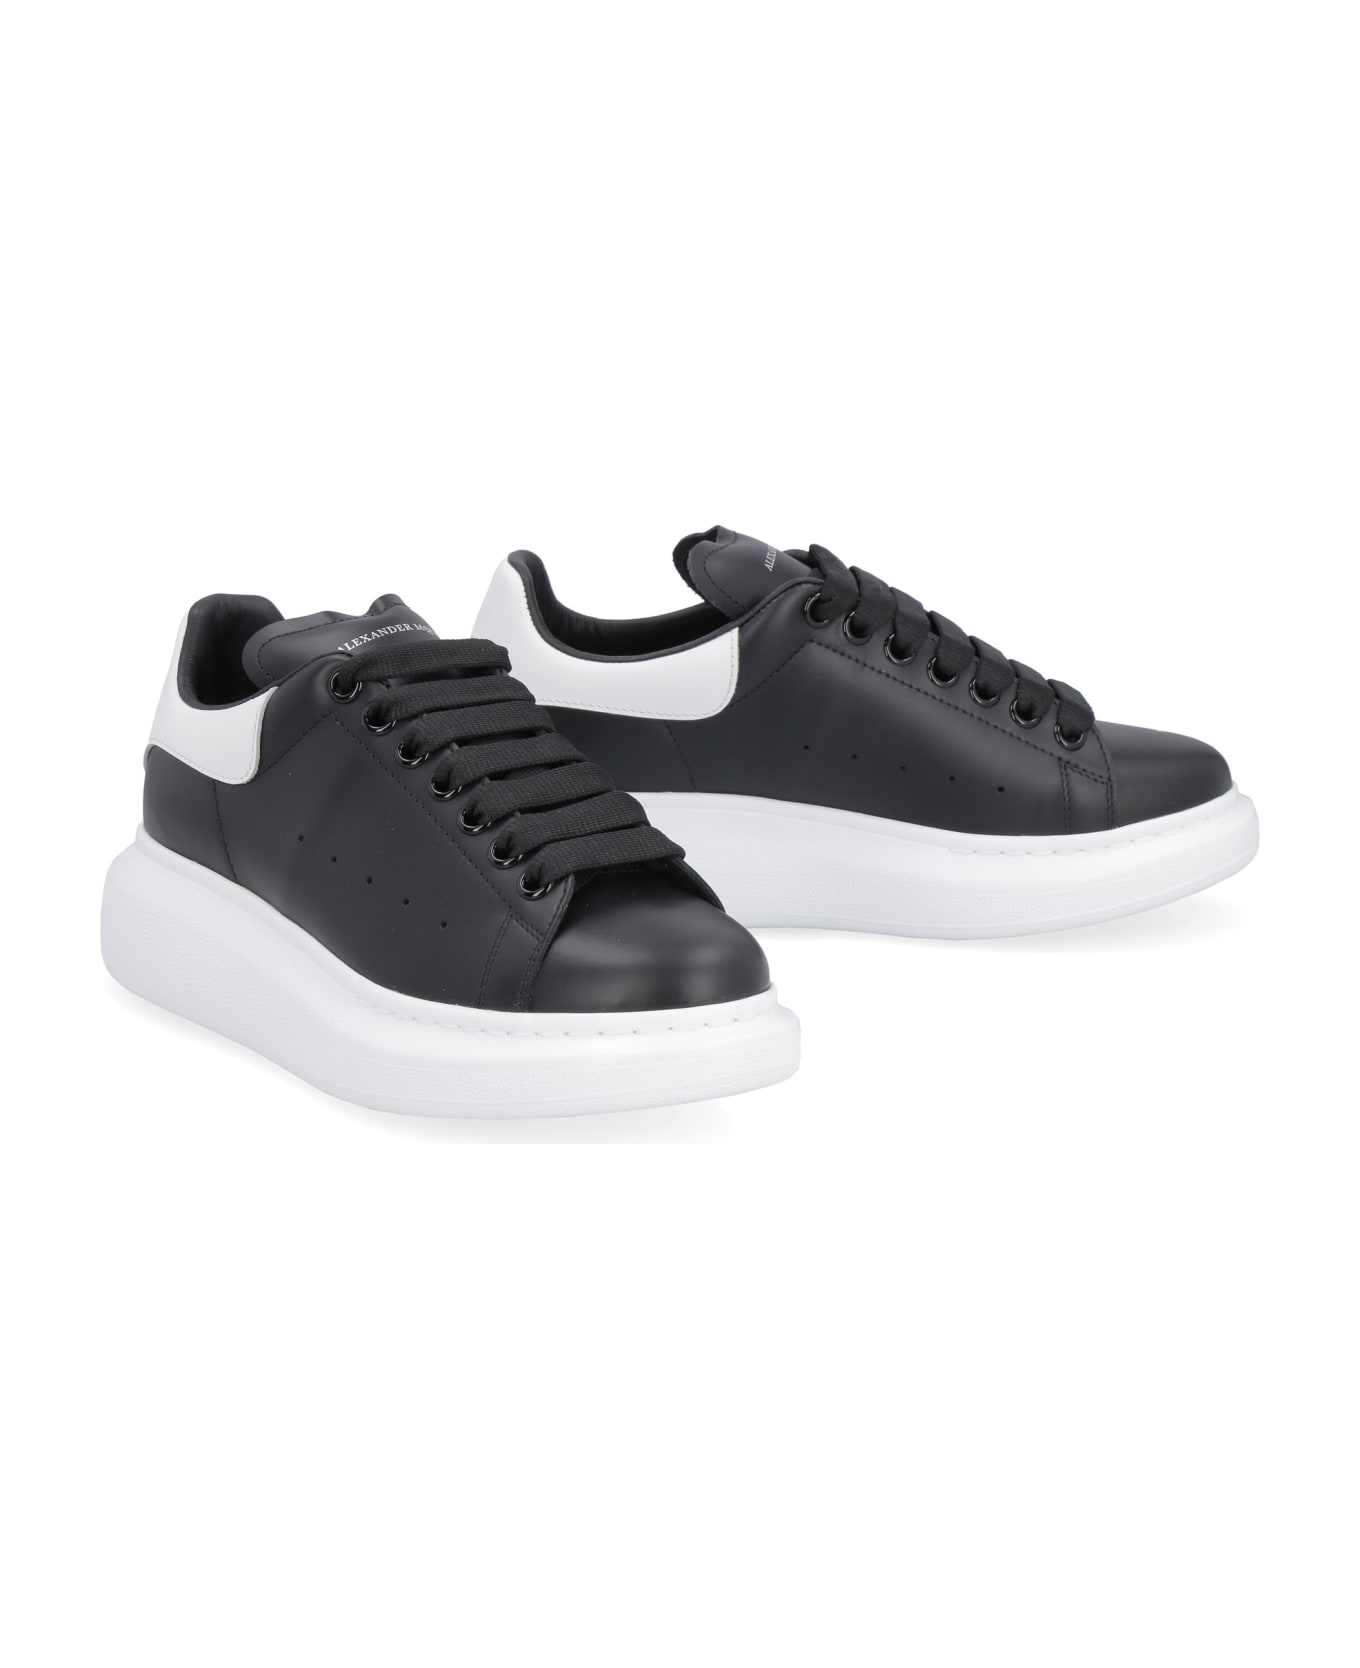 Alexander McQueen Larry Leather Sneakers - Black ウェッジシューズ